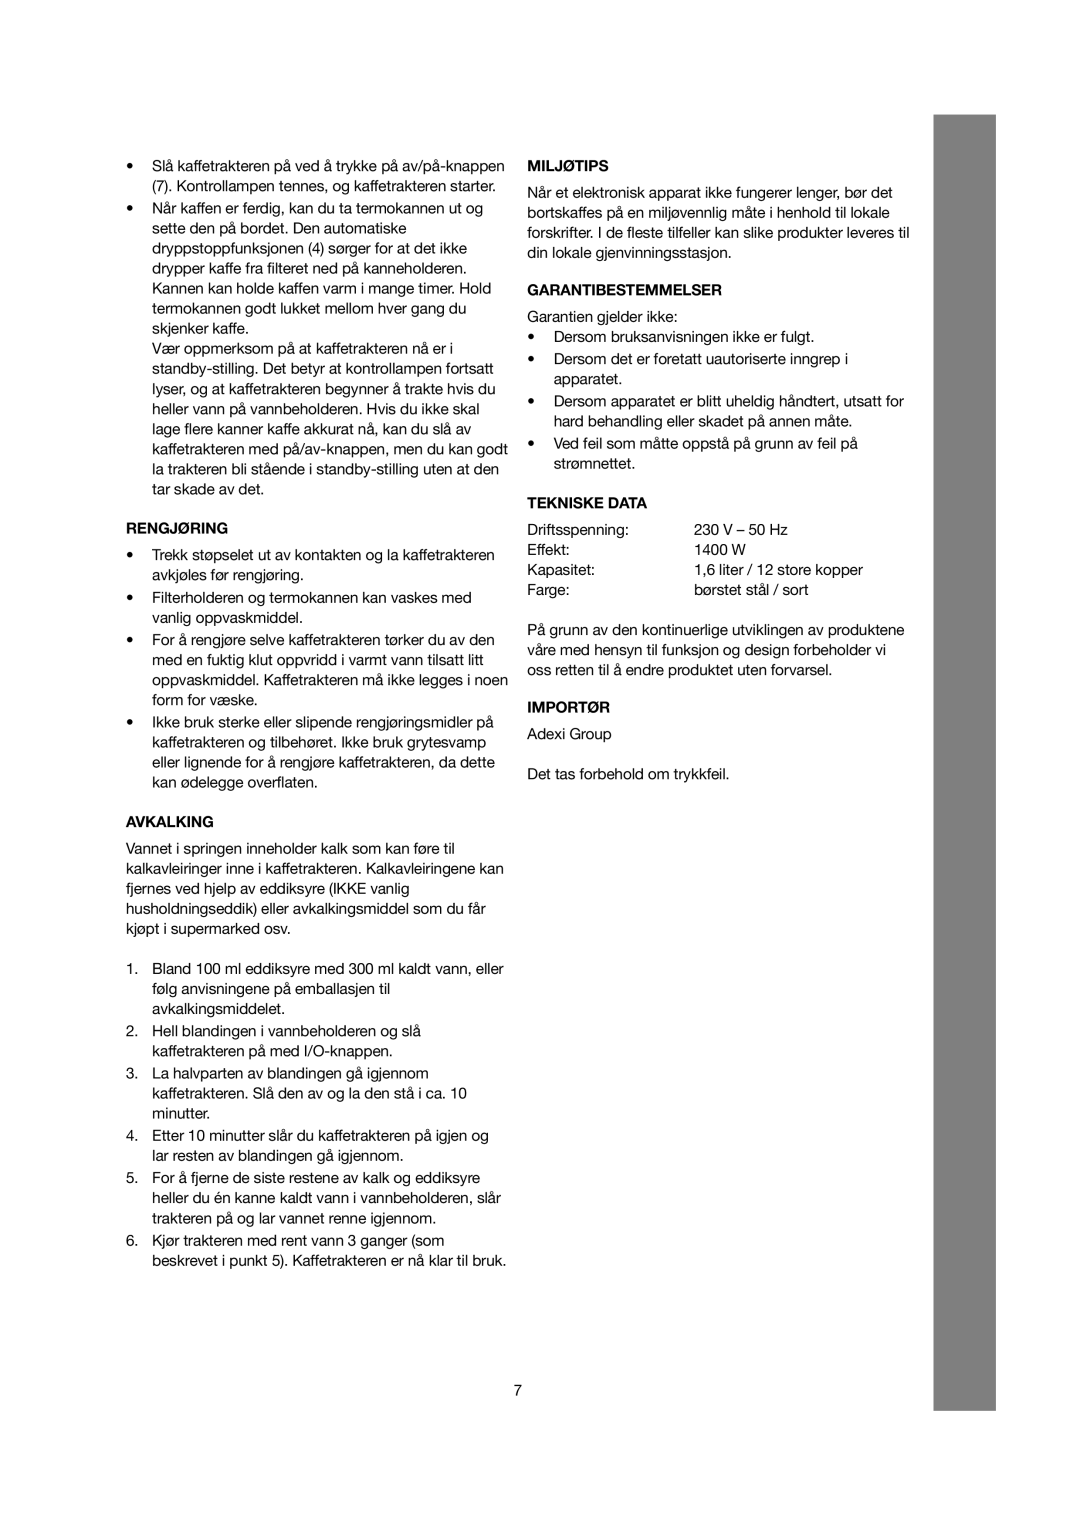 Melissa 245-030/040 manual Rengjøring, Avkalking, Miljøtips, Garantibestemmelser, Tekniske Data, Importør 